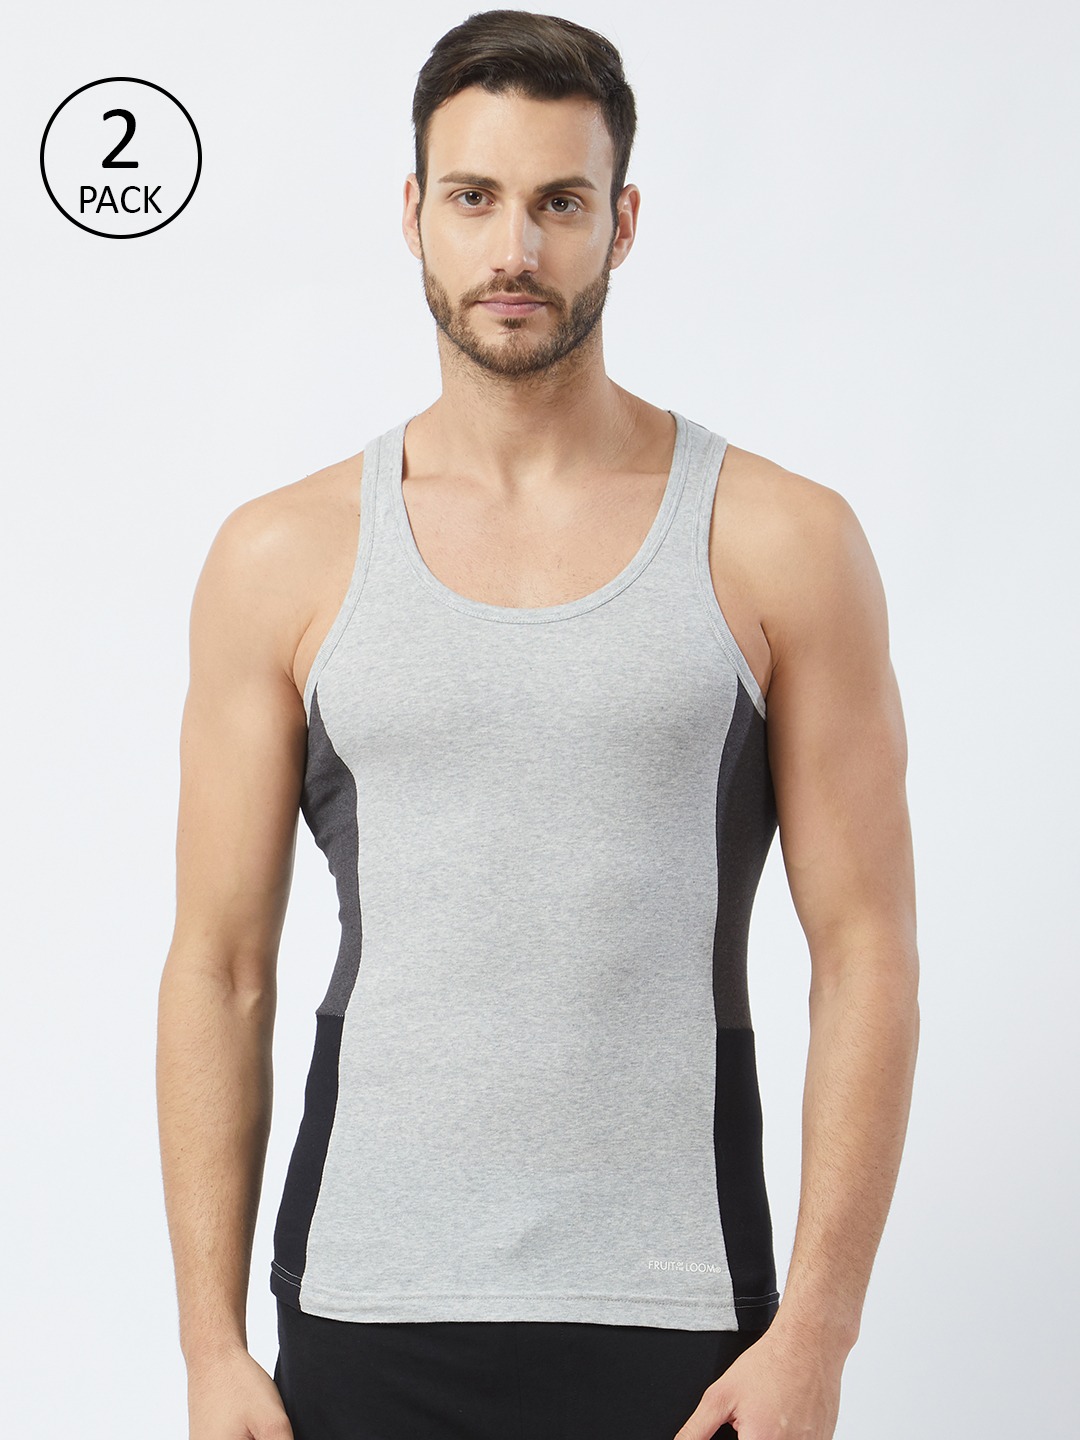 Clothing Innerwear Vests | Fruit of the loom Men Pack of 2 Innerwear Vests MFV02-N-2P-C5 - XZ38357